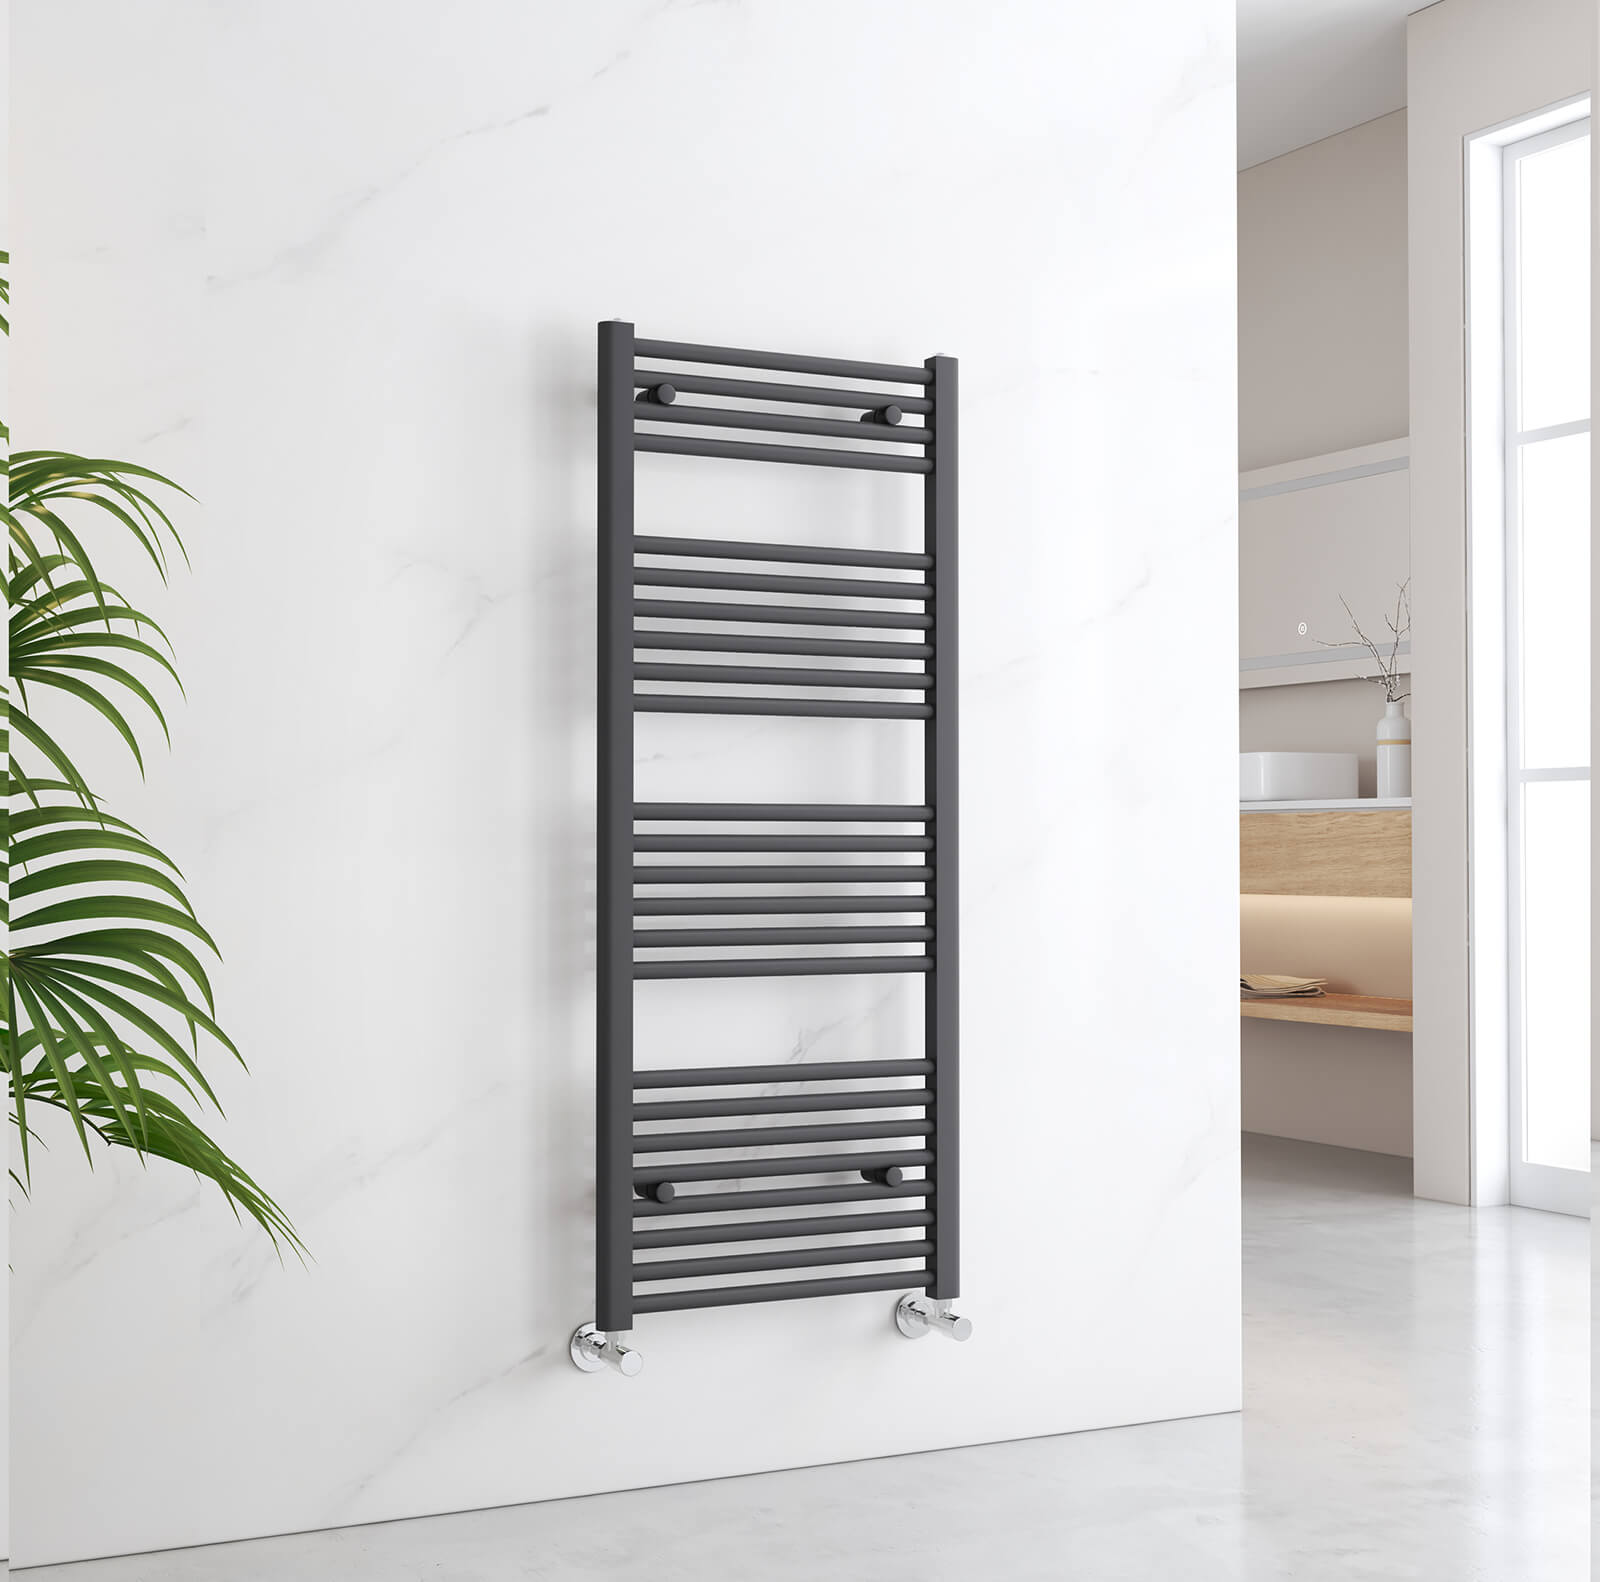 emke towel radiator for bathroom utr1250s1a